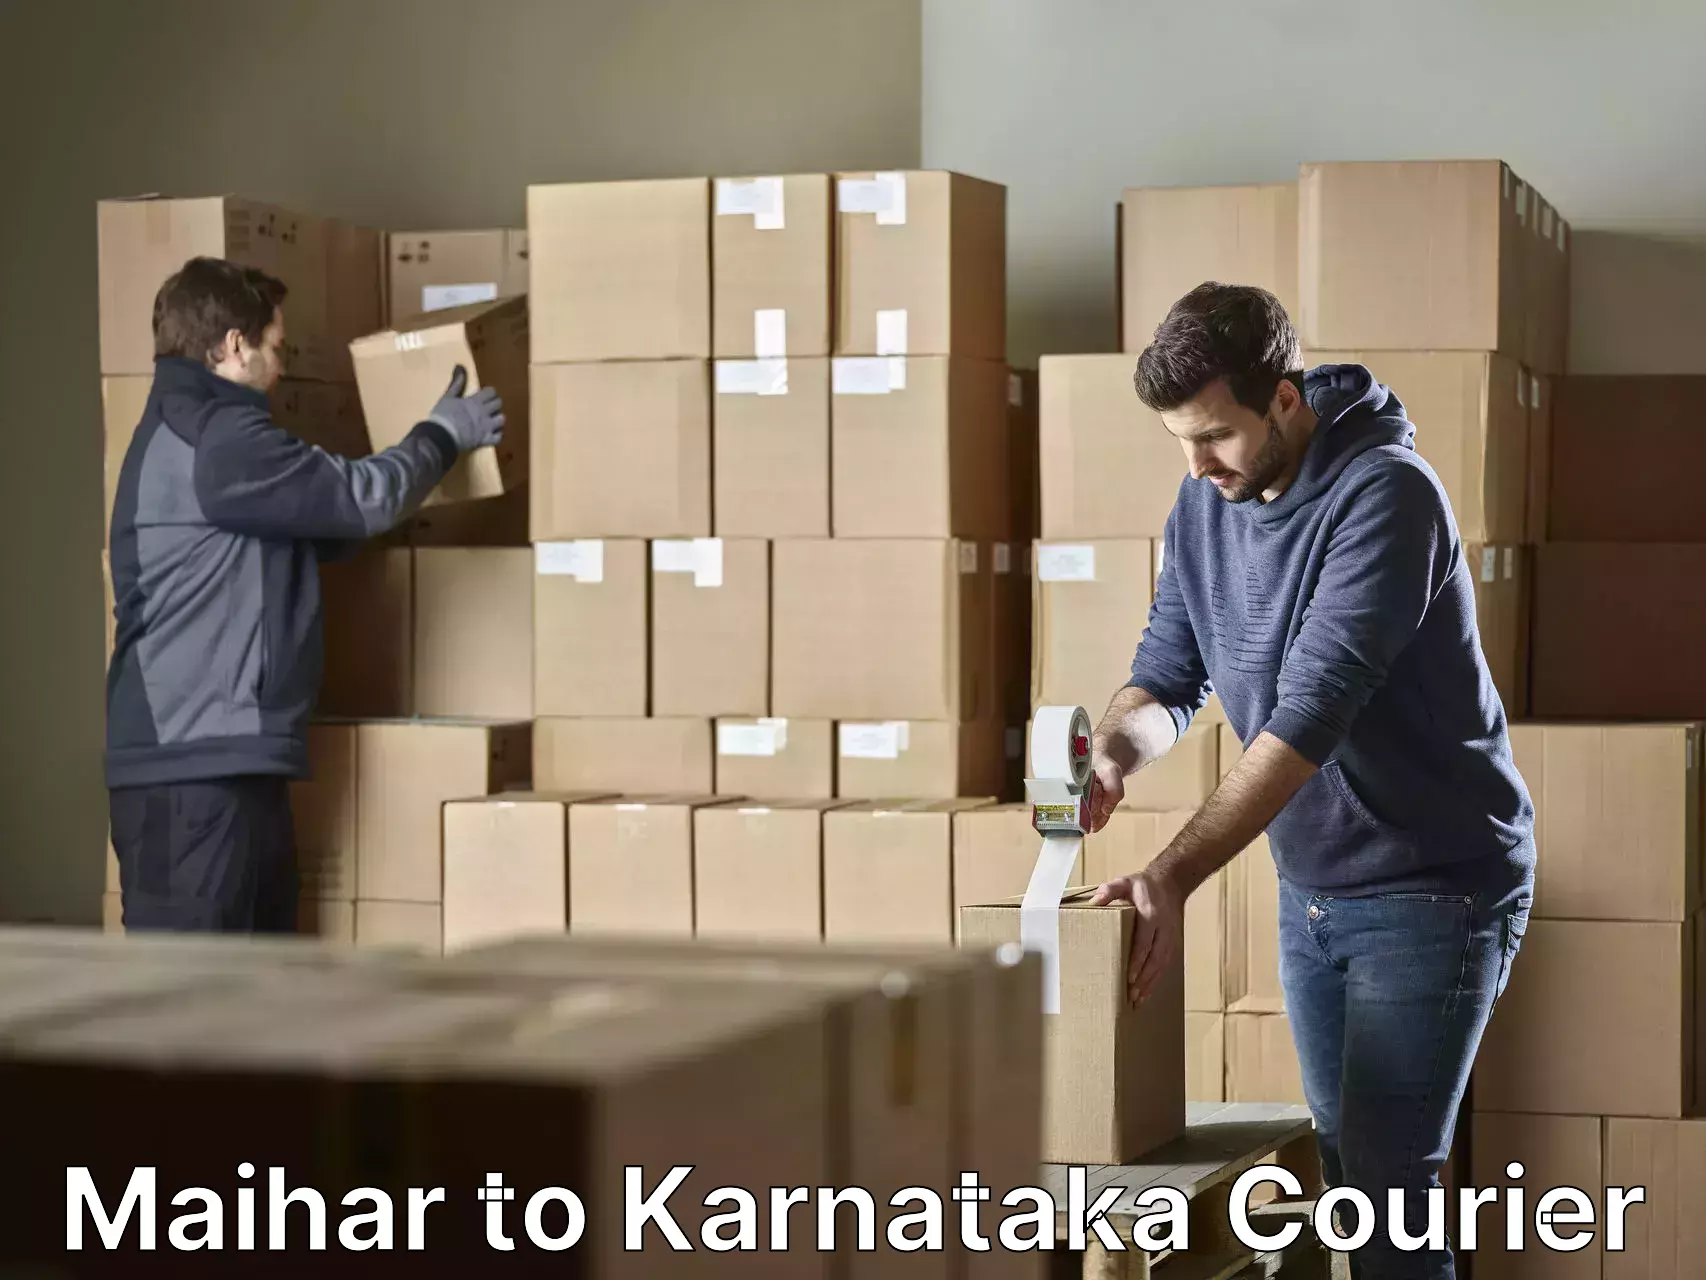 Professional furniture transport Maihar to Kanjarakatte